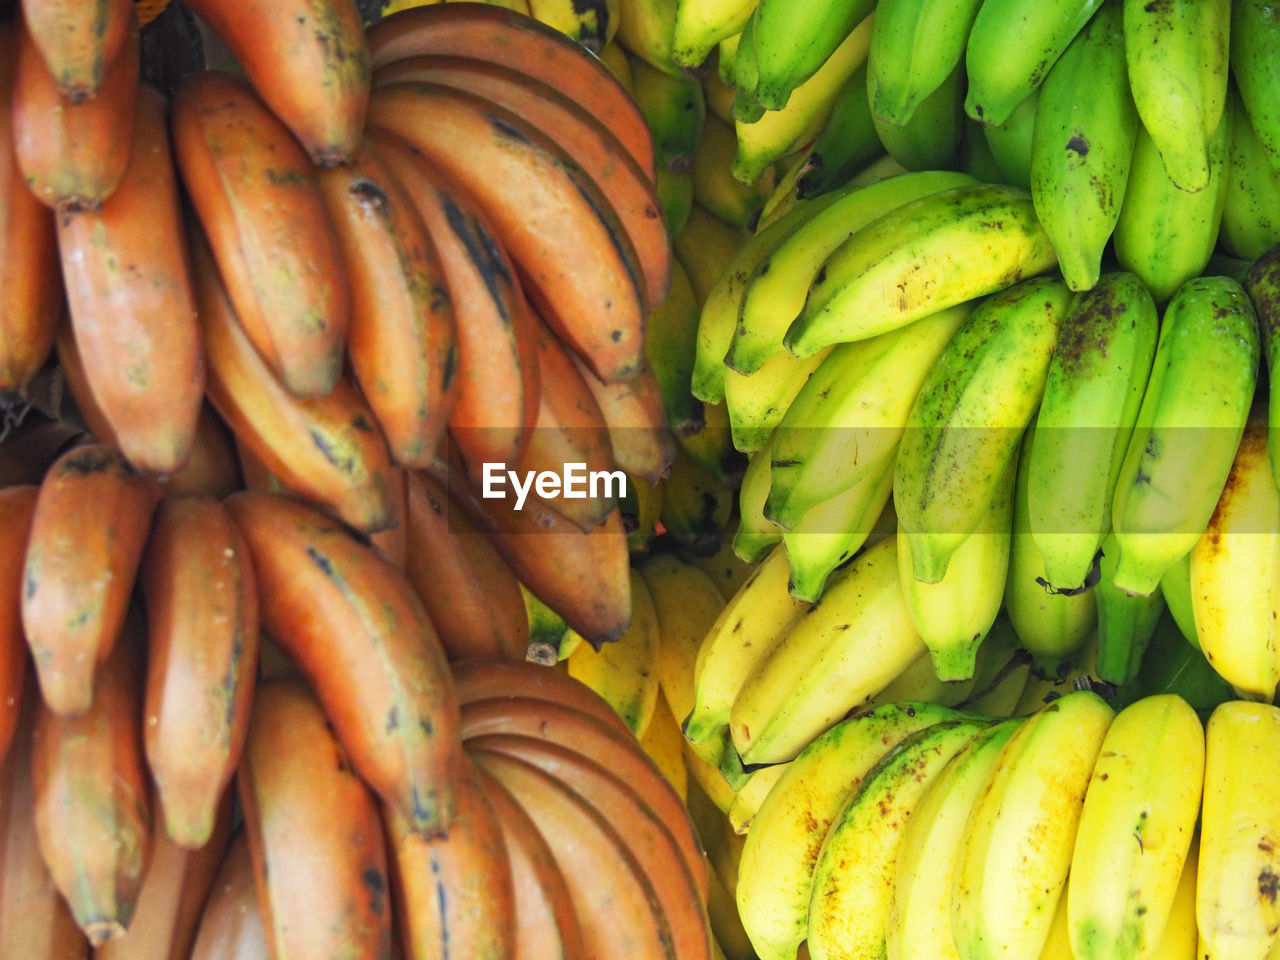 Close-up of bananas hanging at market stall